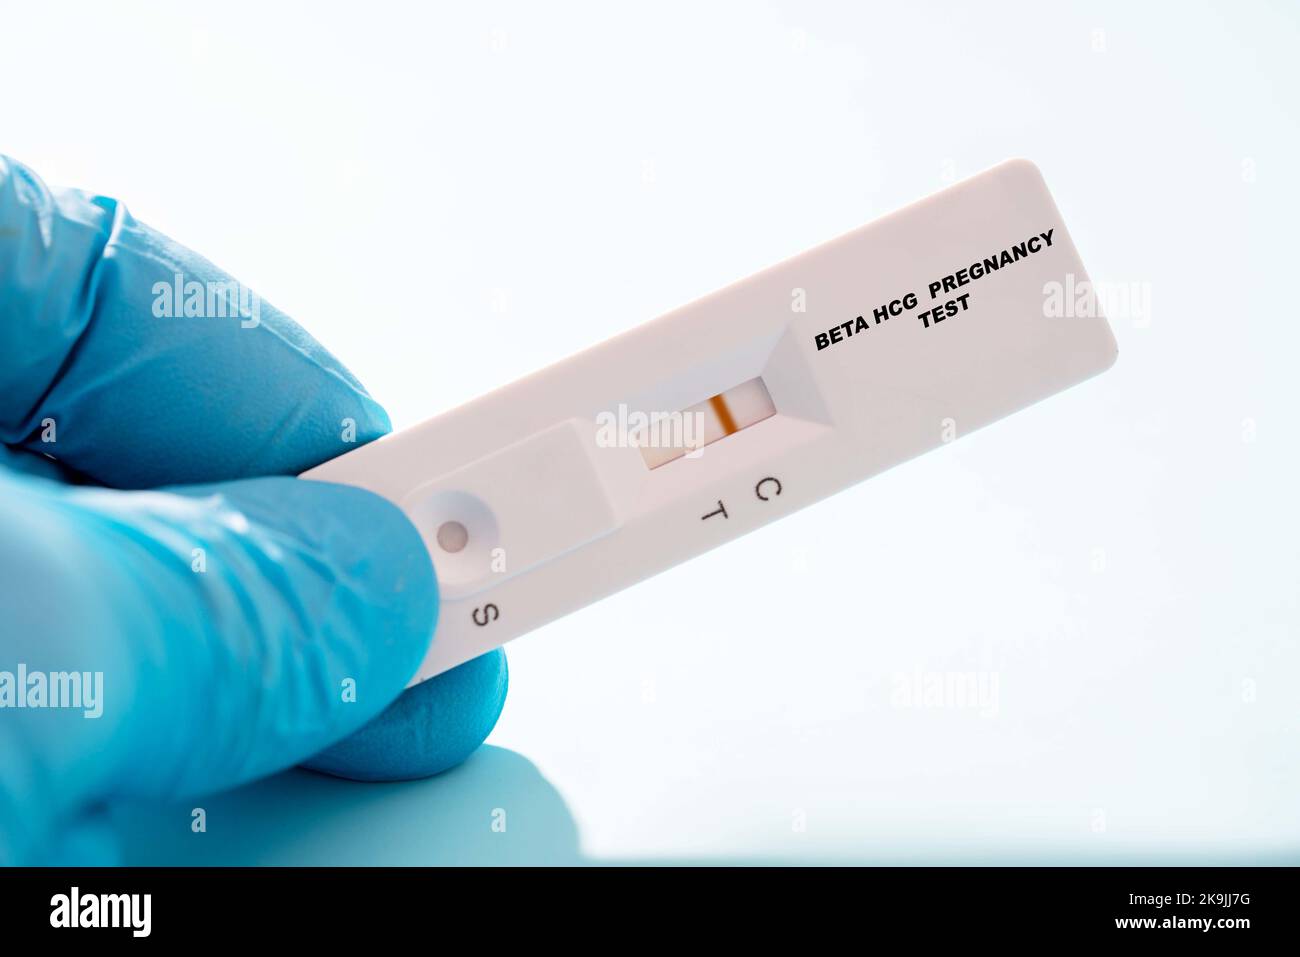 Test rapide de grossesse bêta-HCG négatif, image conceptuelle ...